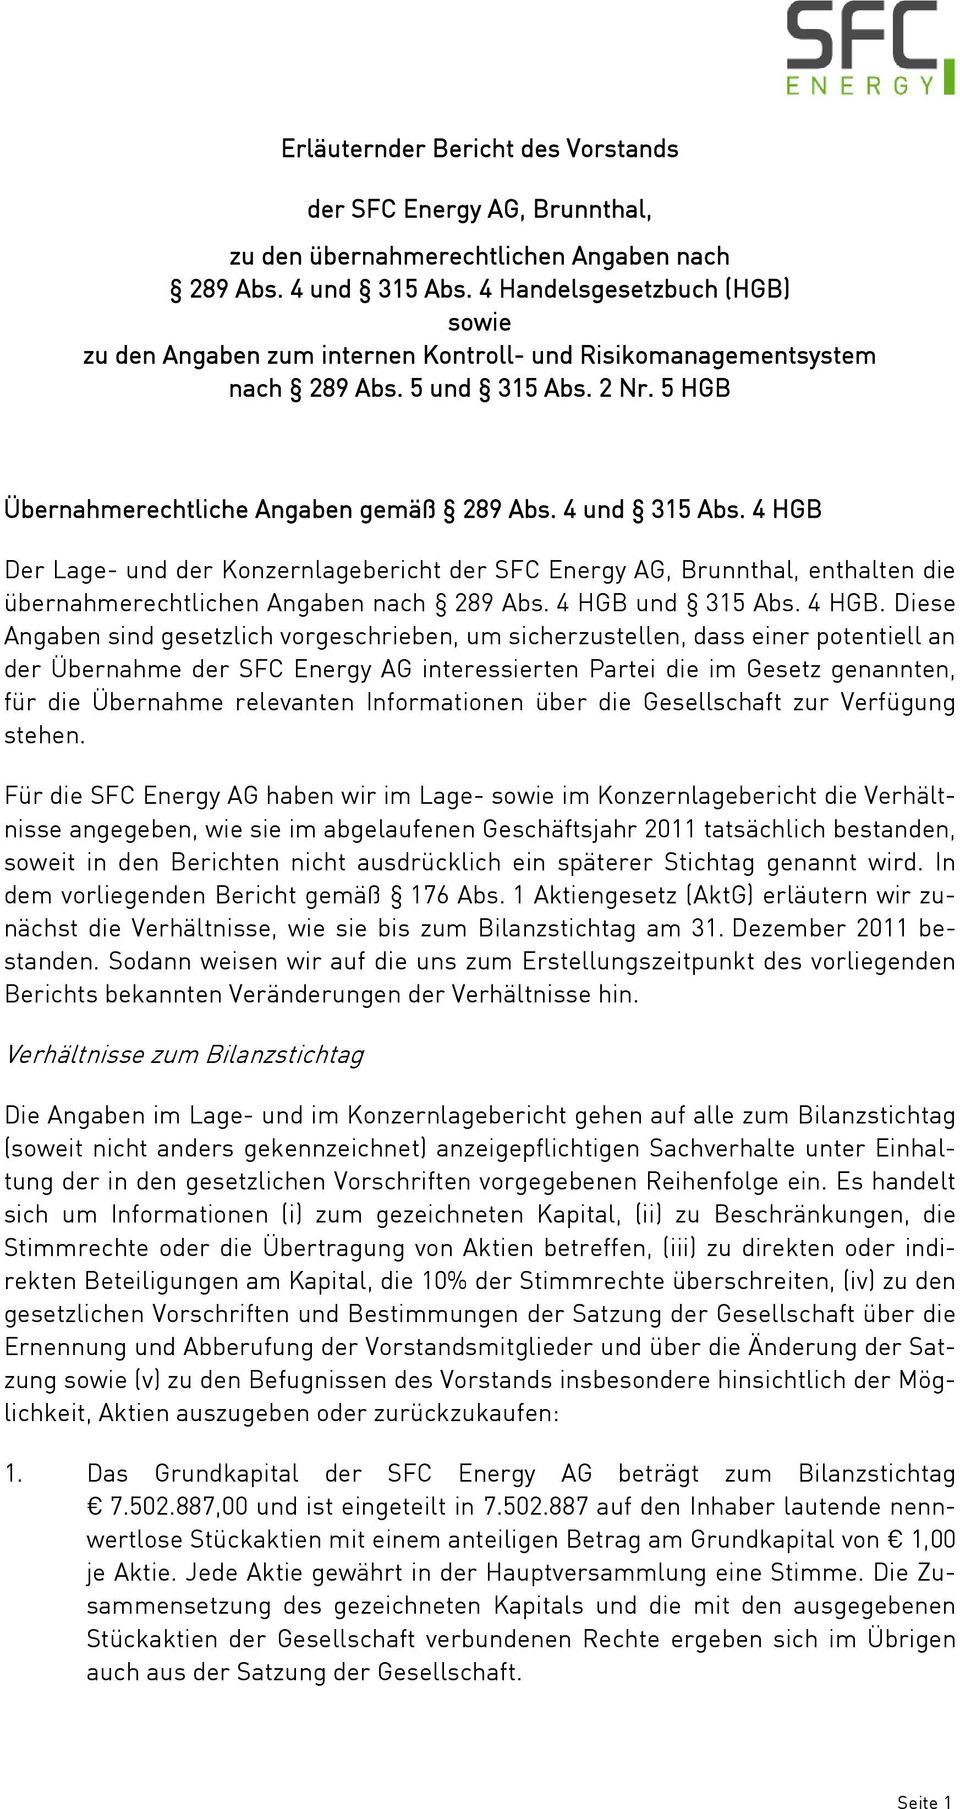 4 HGB Der Lage- und der Konzernlagebericht der SFC Energy AG, Brunnthal, enthalten die übernahmerechtlichen Angaben nach 289 Abs. 4 HGB 